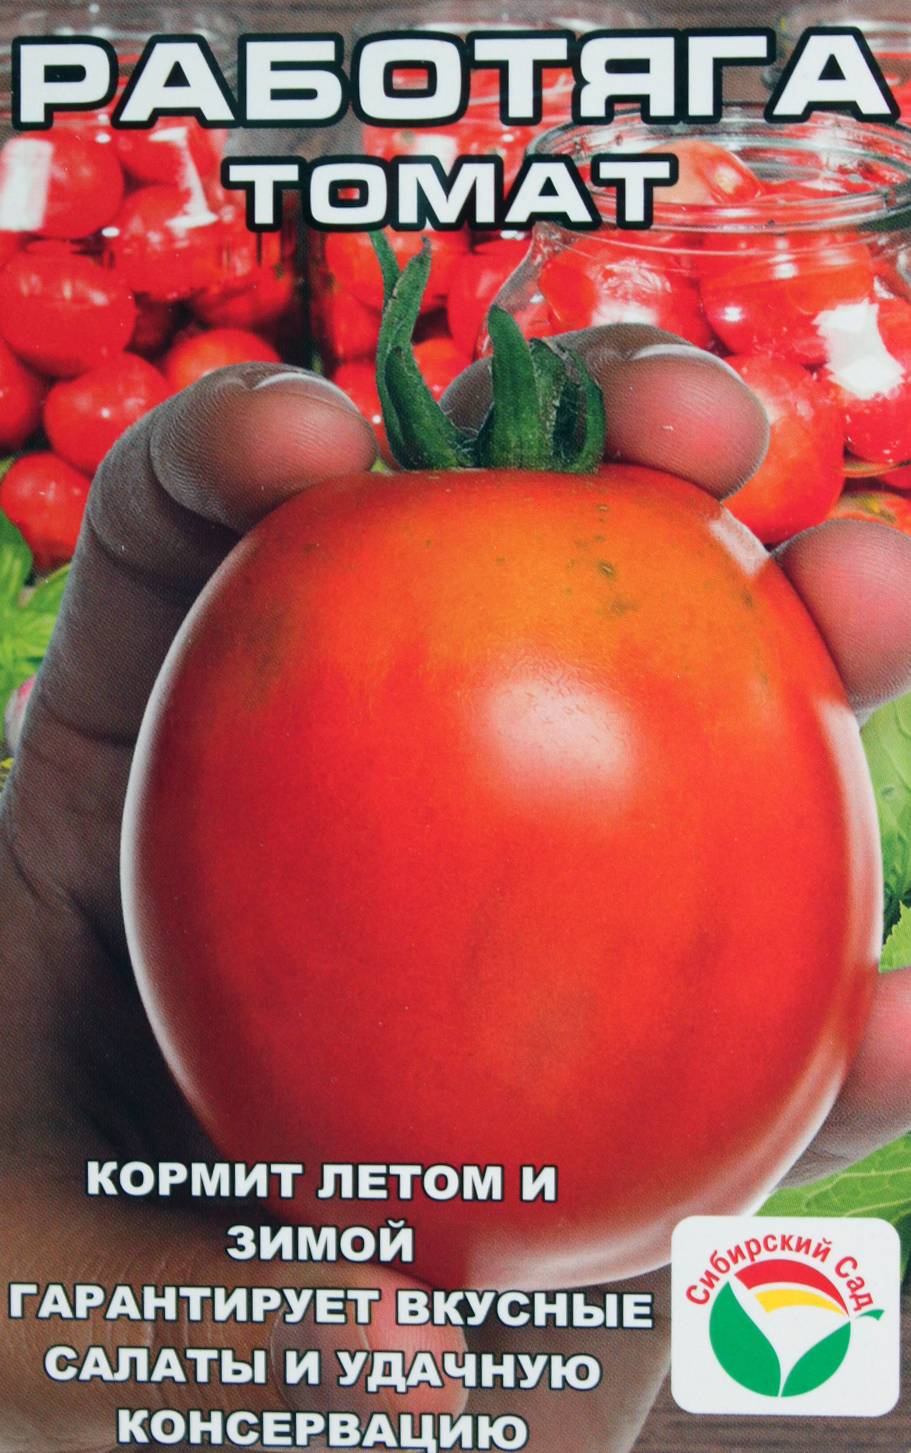 Голландский томат с русским именем «таня» — описание гибрида f1